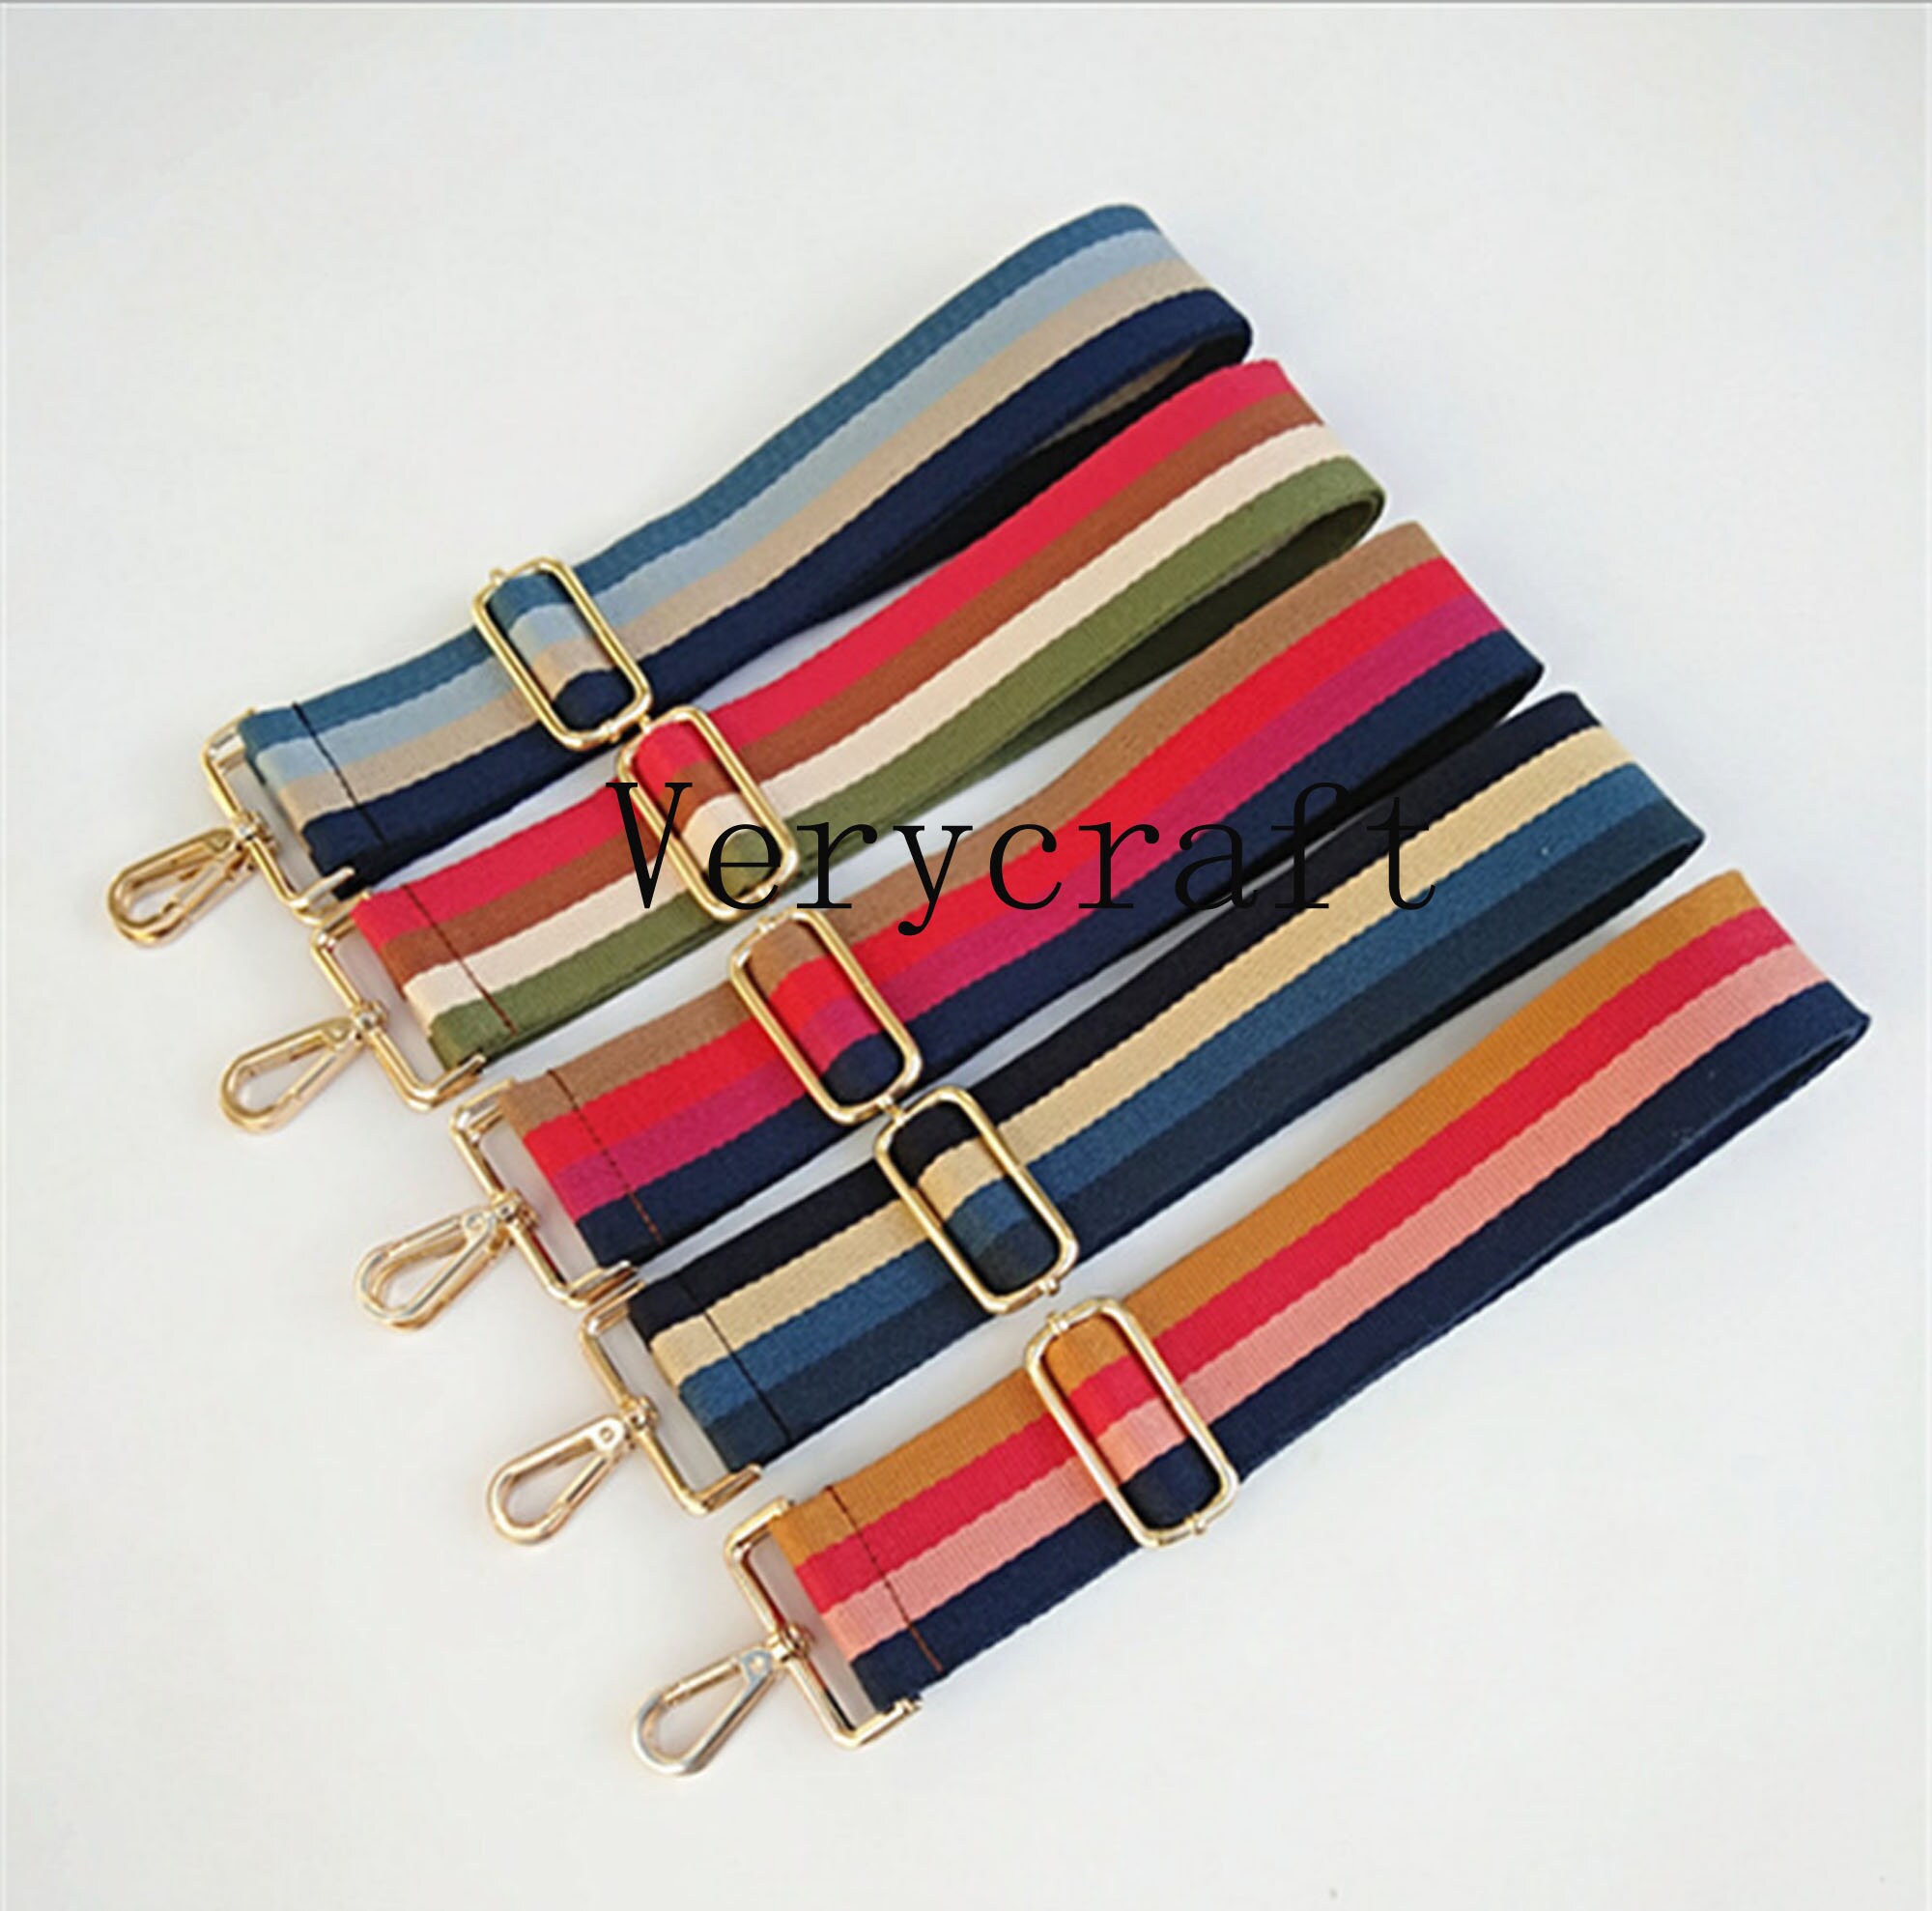  HASMI Purse Strap Bag Strap Handbag Belt Wide Shoulder Bag  Strap Replacement Strap Accessory Bag Part Adjustable Belt for Bags 130cm  Straps (Color : 29, Size : Gold Hardware) : Everything Else